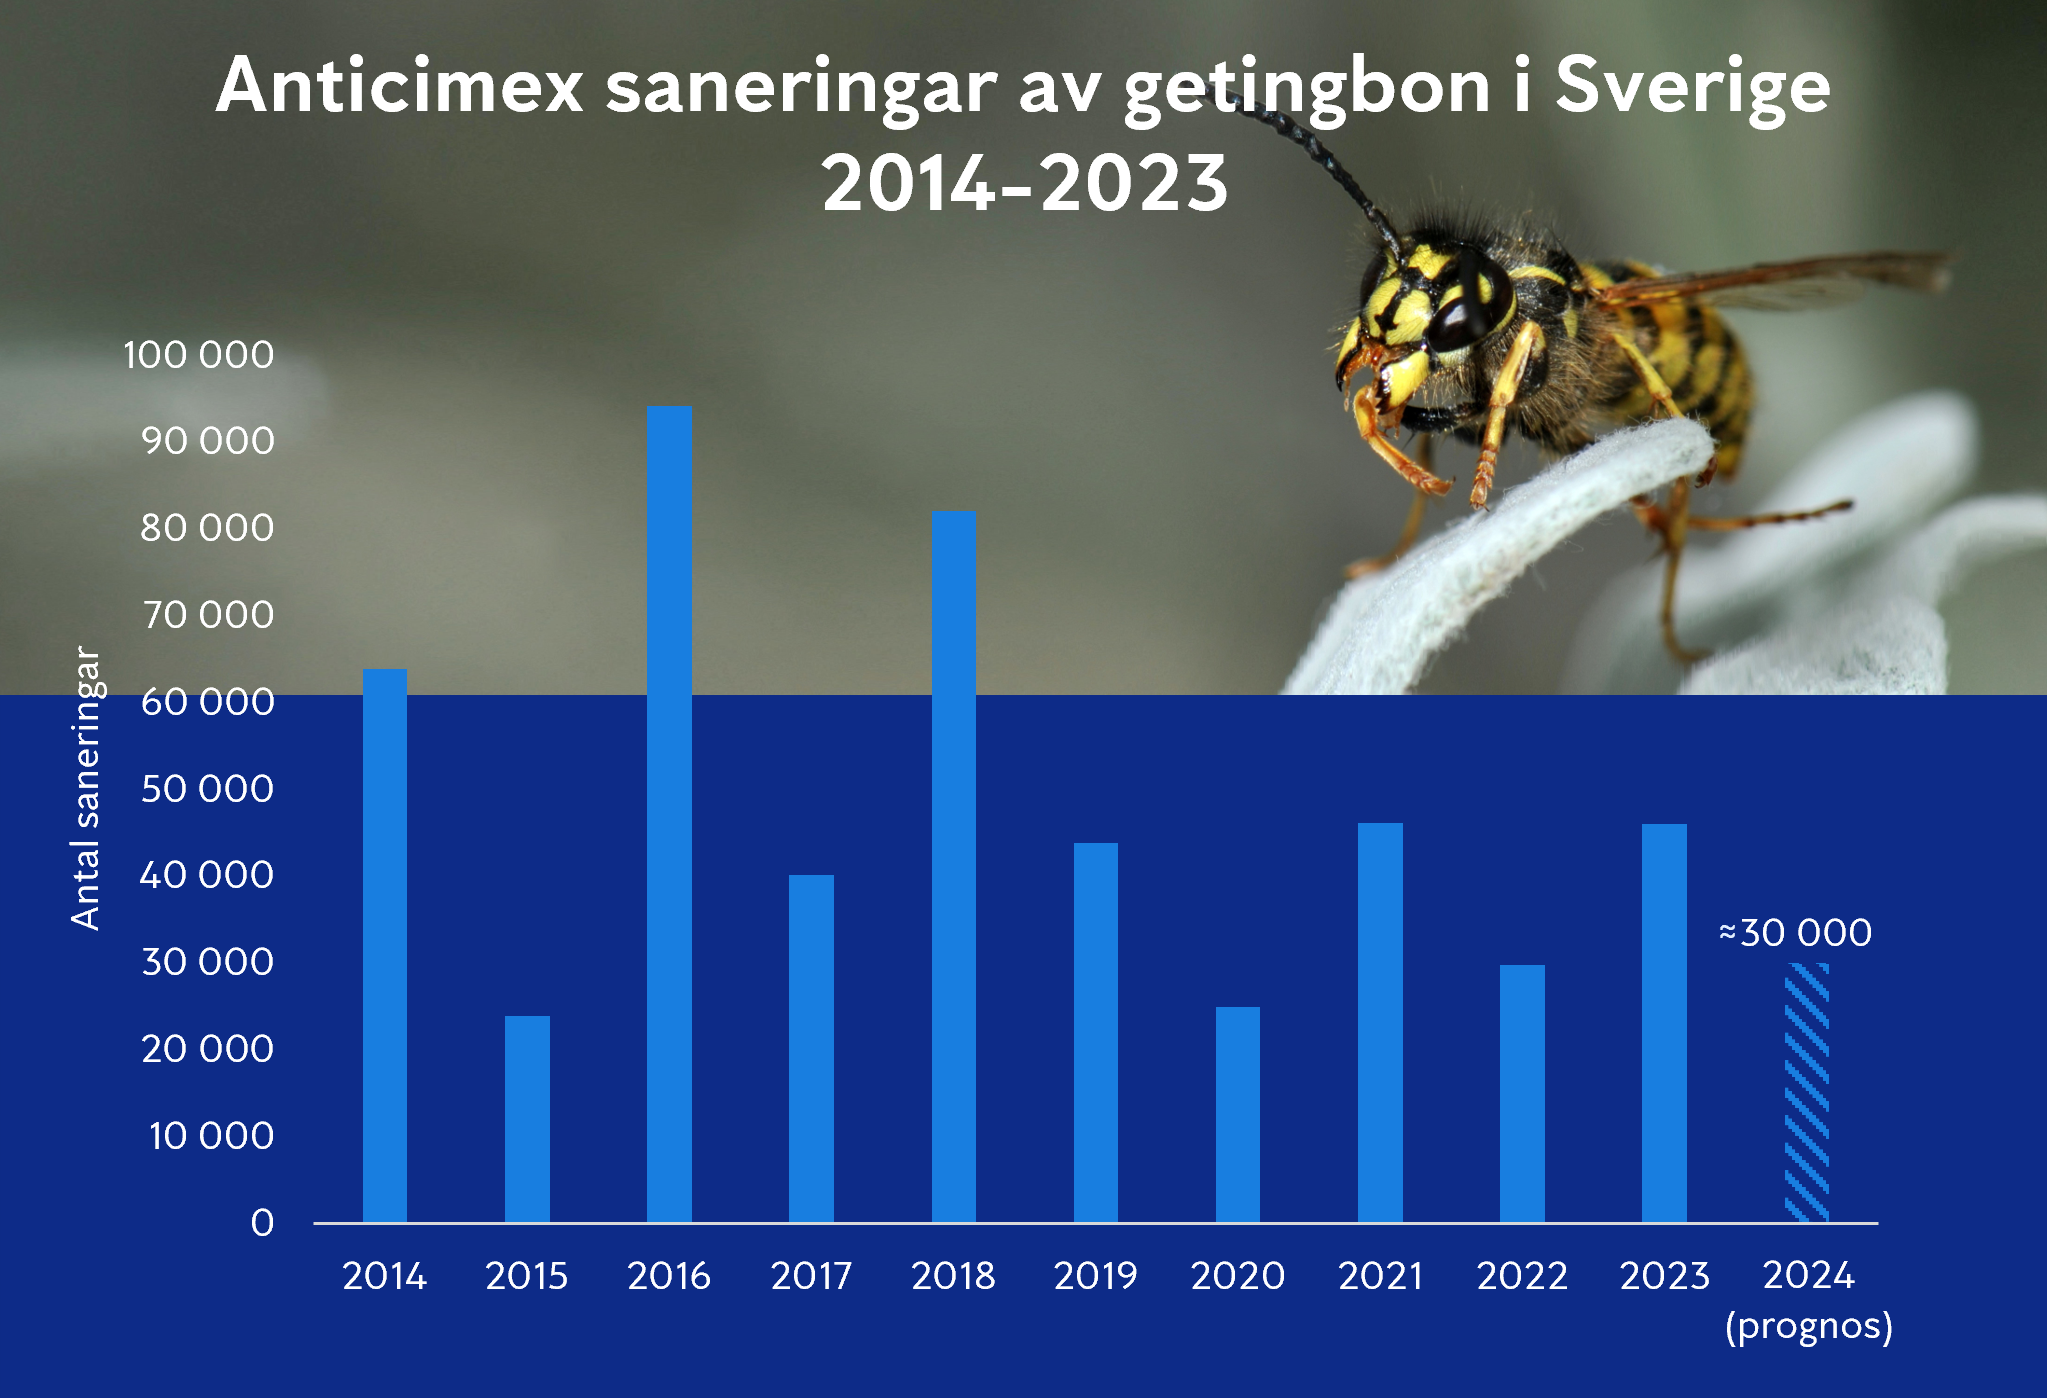 Graf över Anticimex saneringar av getingar 2014 till 2023 plus prognos sommaren 2024